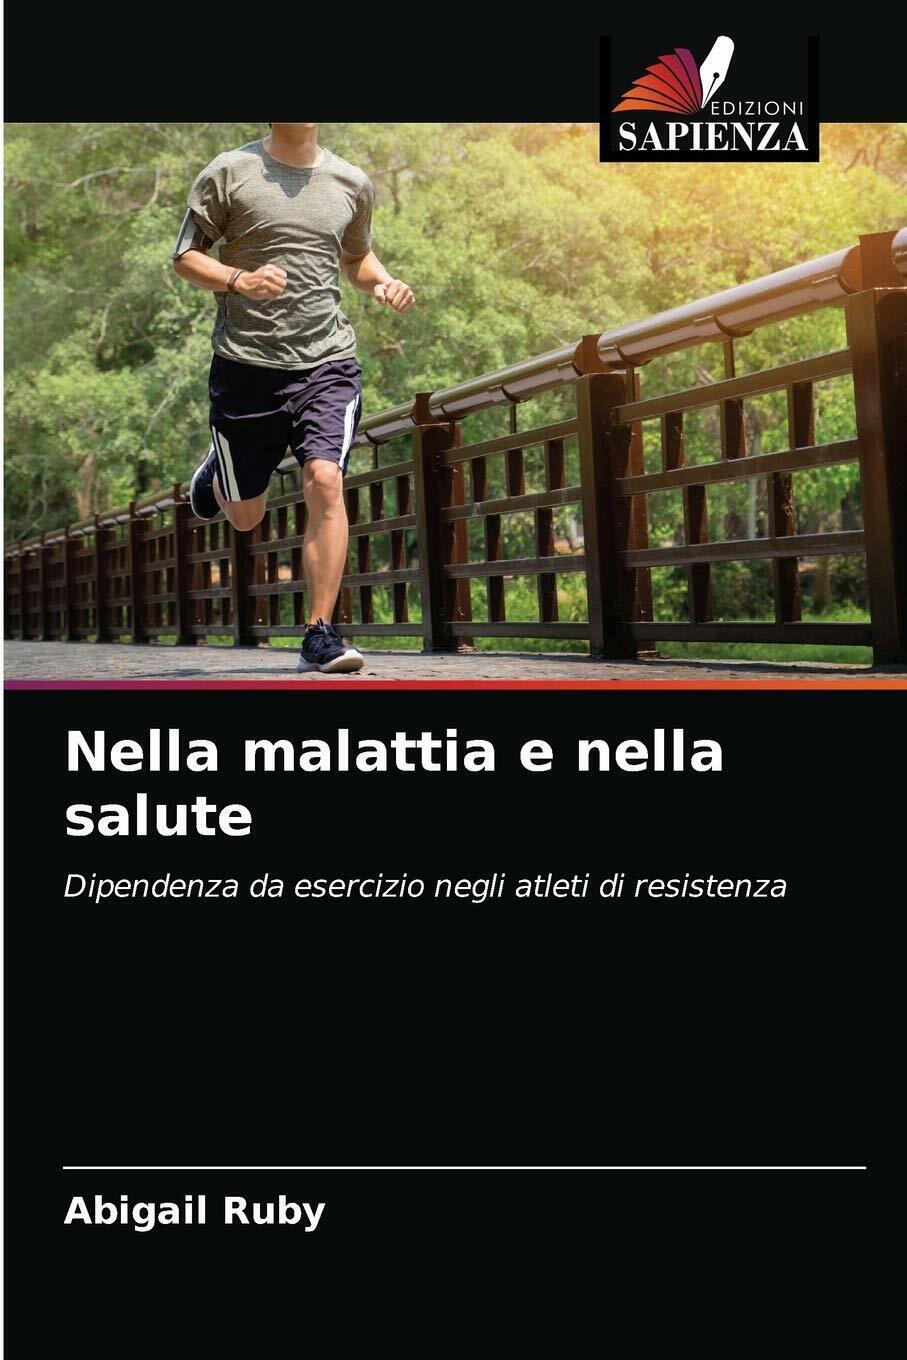 NELLA MALATTIA E NELLA SALUTE - ABIGAIL RUBY - Edizioni Sapienza, 2021